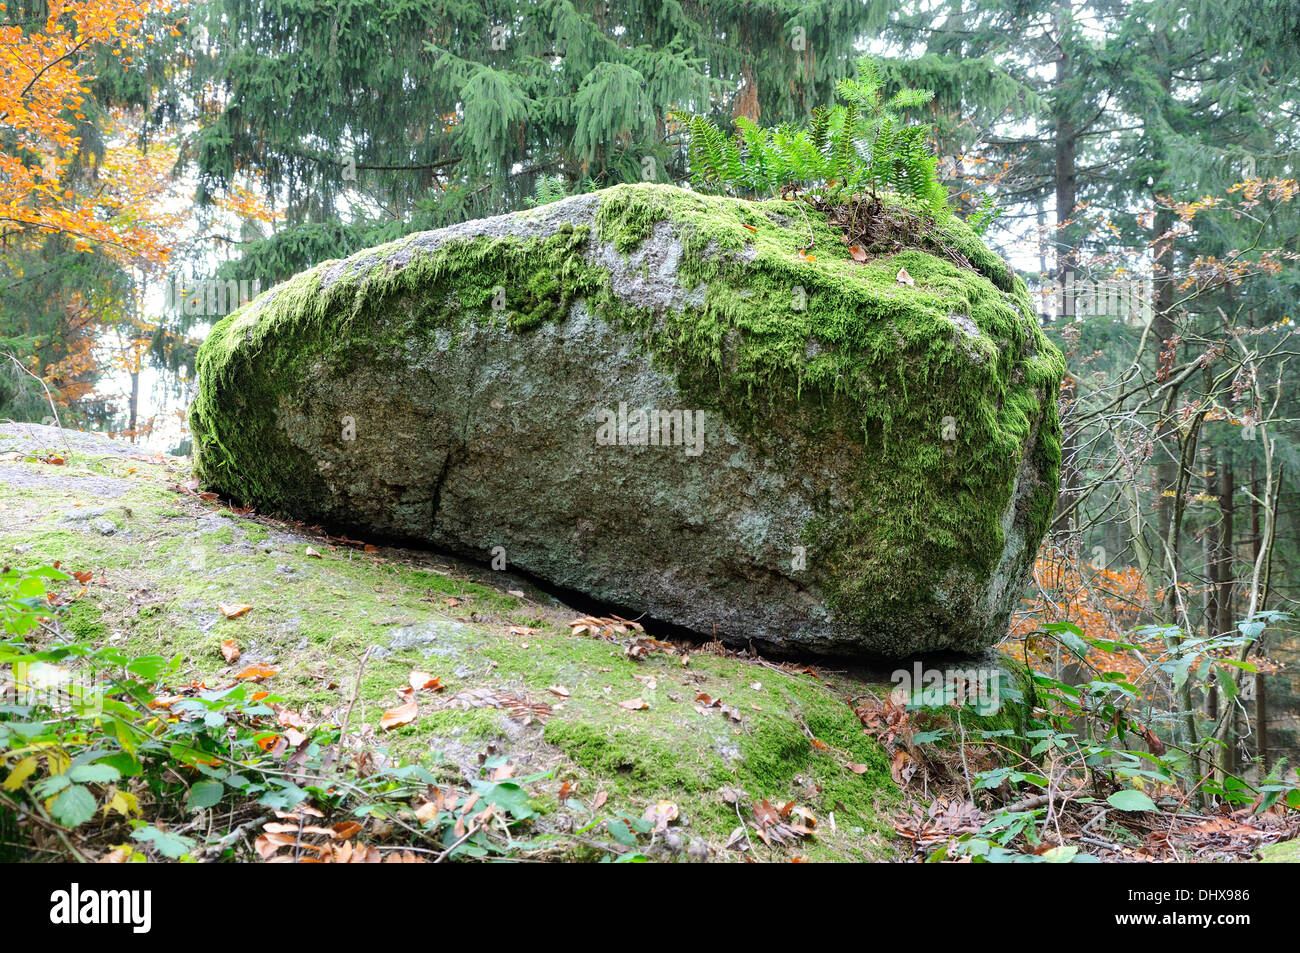 Moosbewachsenen Stein im Wald Stockfoto